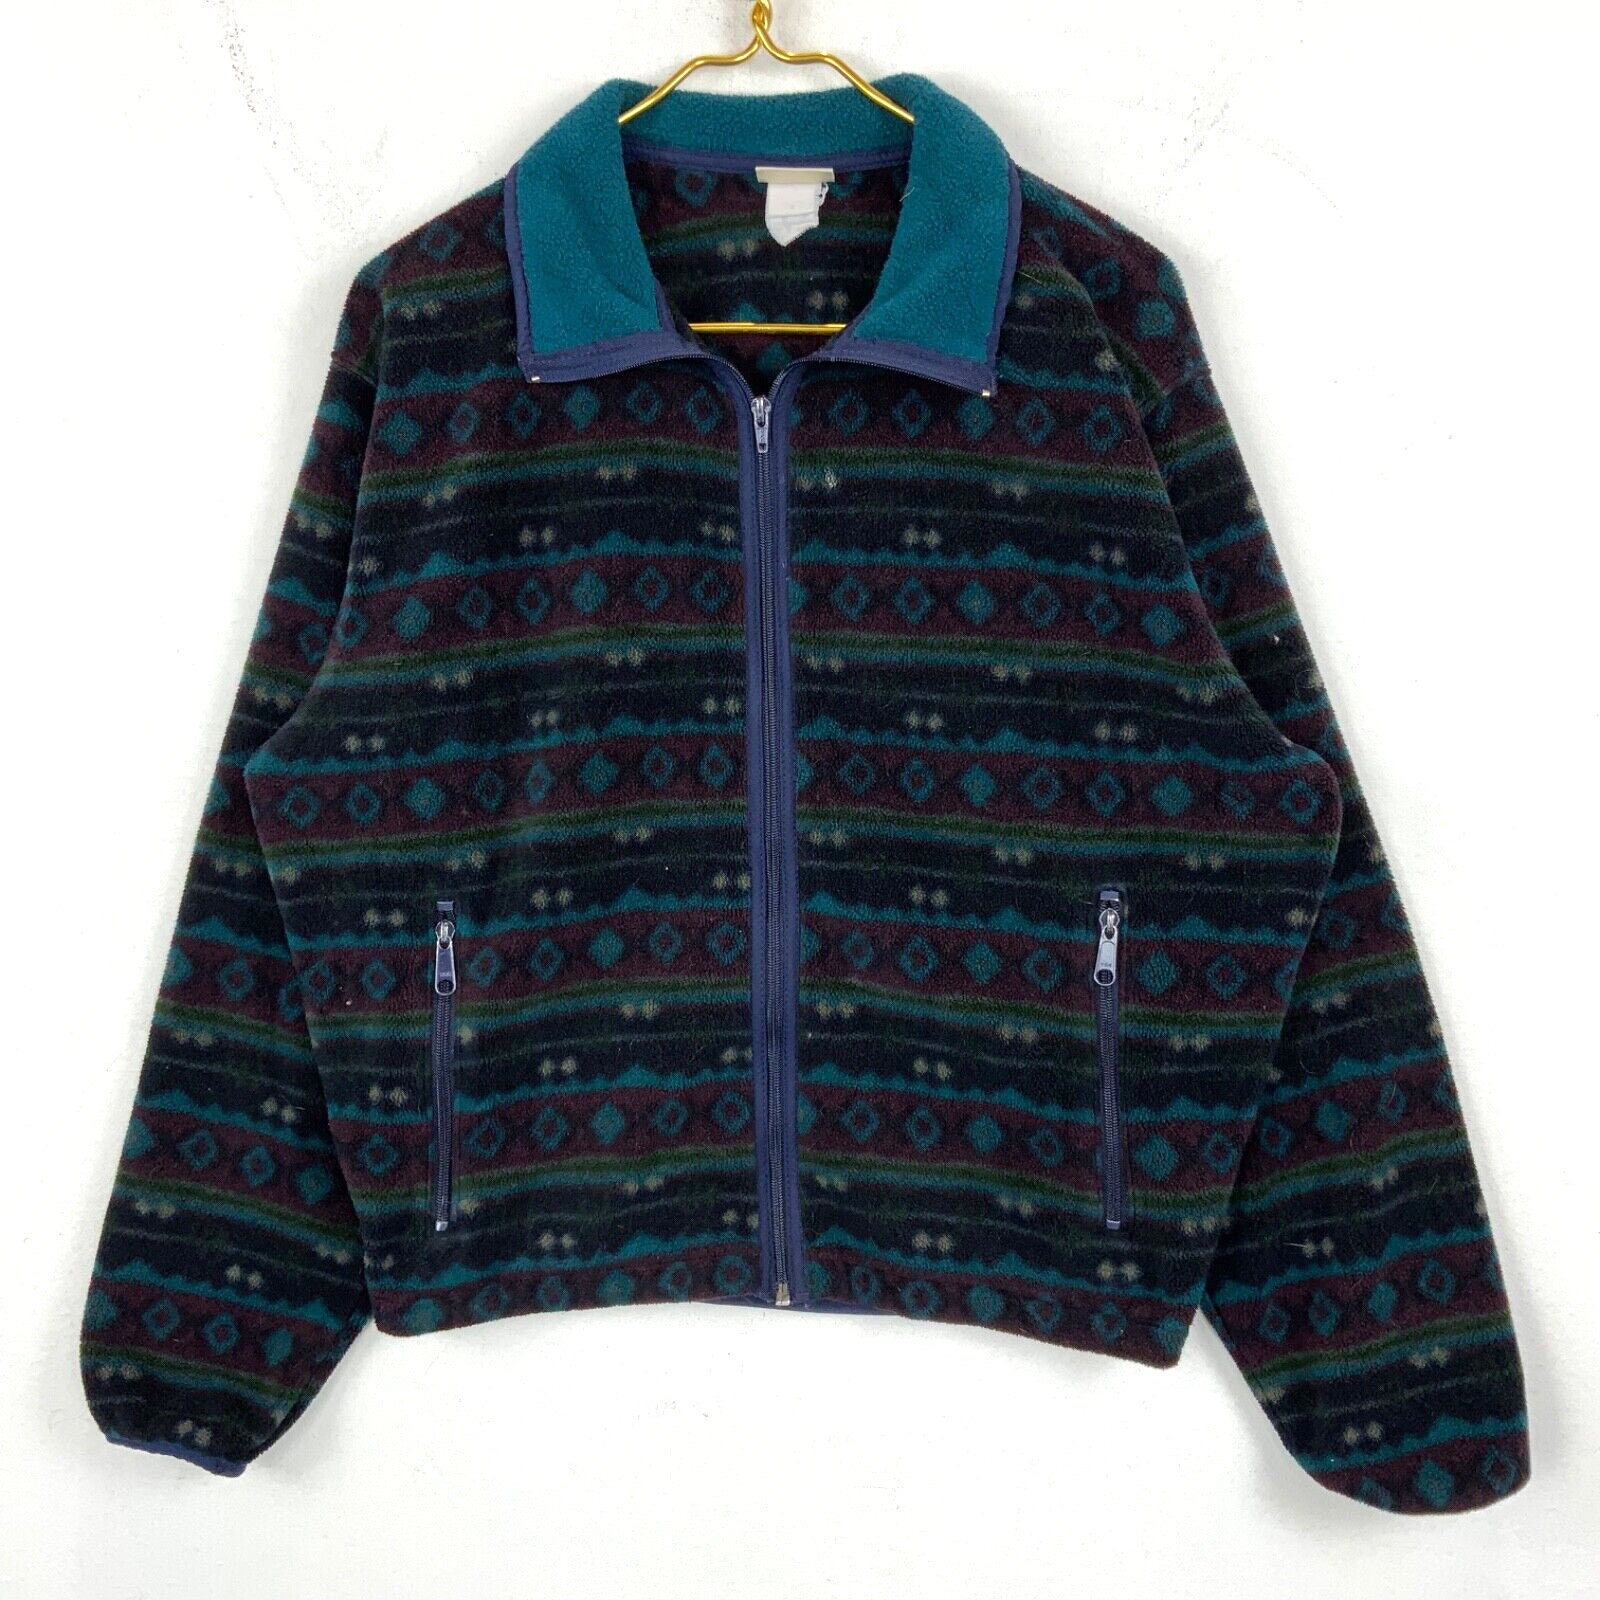 90s Patterned Fleece -  Canada